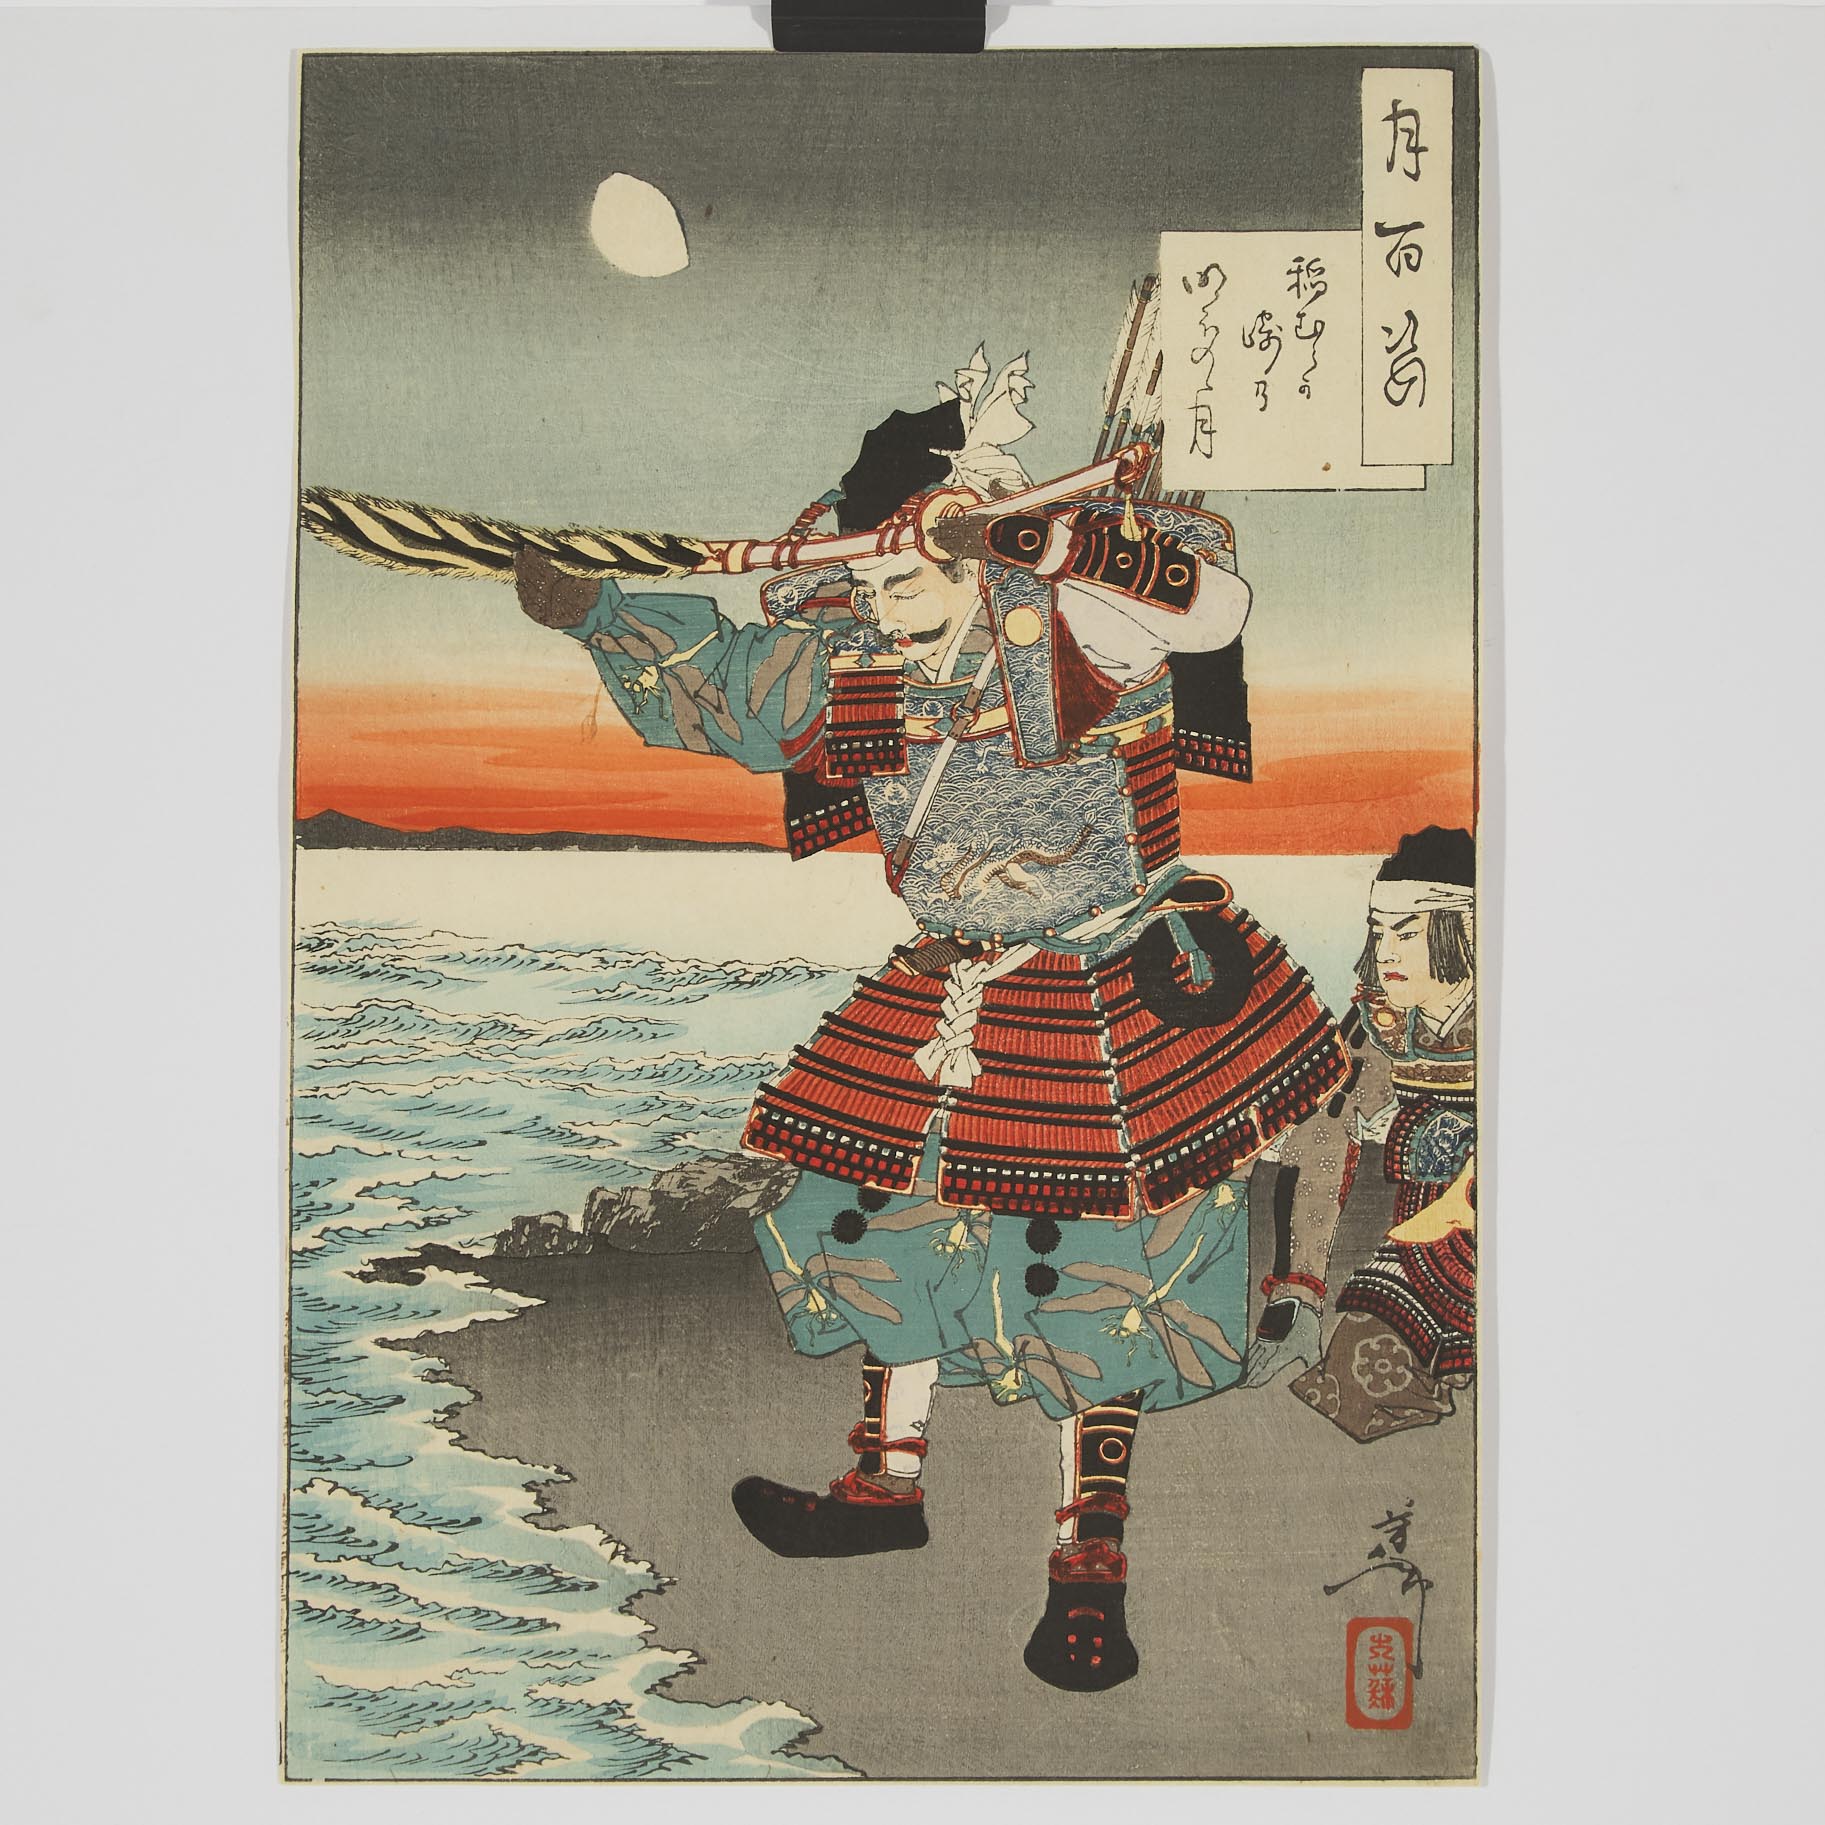 Tsukioka Yoshitoshi (1839-1892), Inamura Promontory Moon at Daybreak, 1886